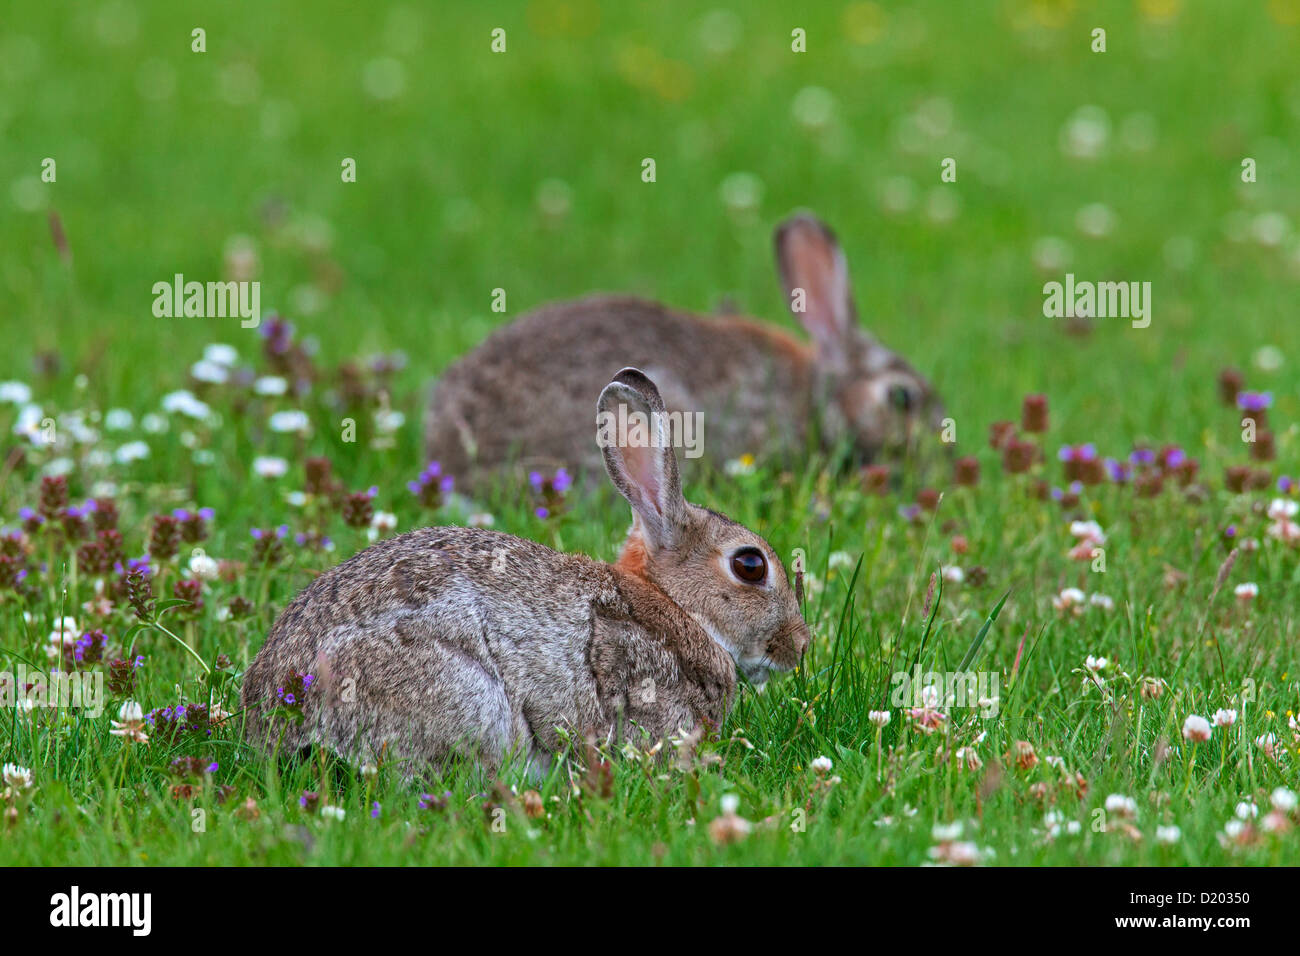 Deux lapins européen / lapin commun (Oryctolagus cuniculus) faire paître dans le champ de fleurs sauvages Banque D'Images